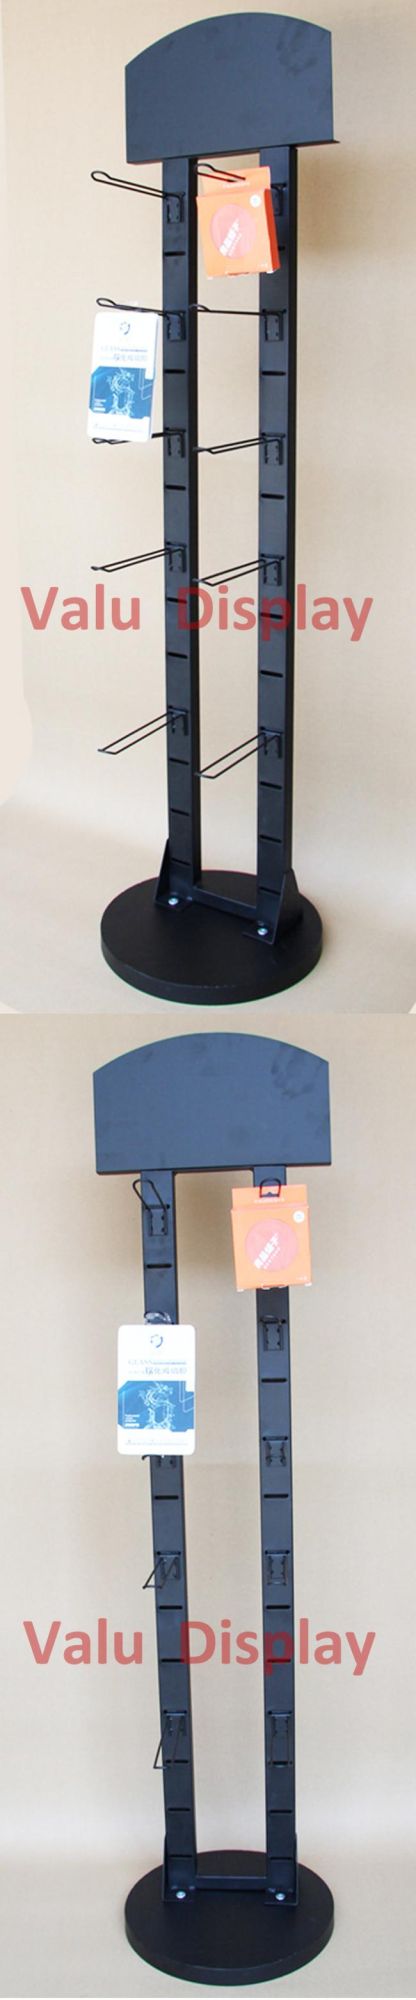 Black Painted Metal Loop Holder Counter Desktop Corner Display Stand Key Ring Display Rack